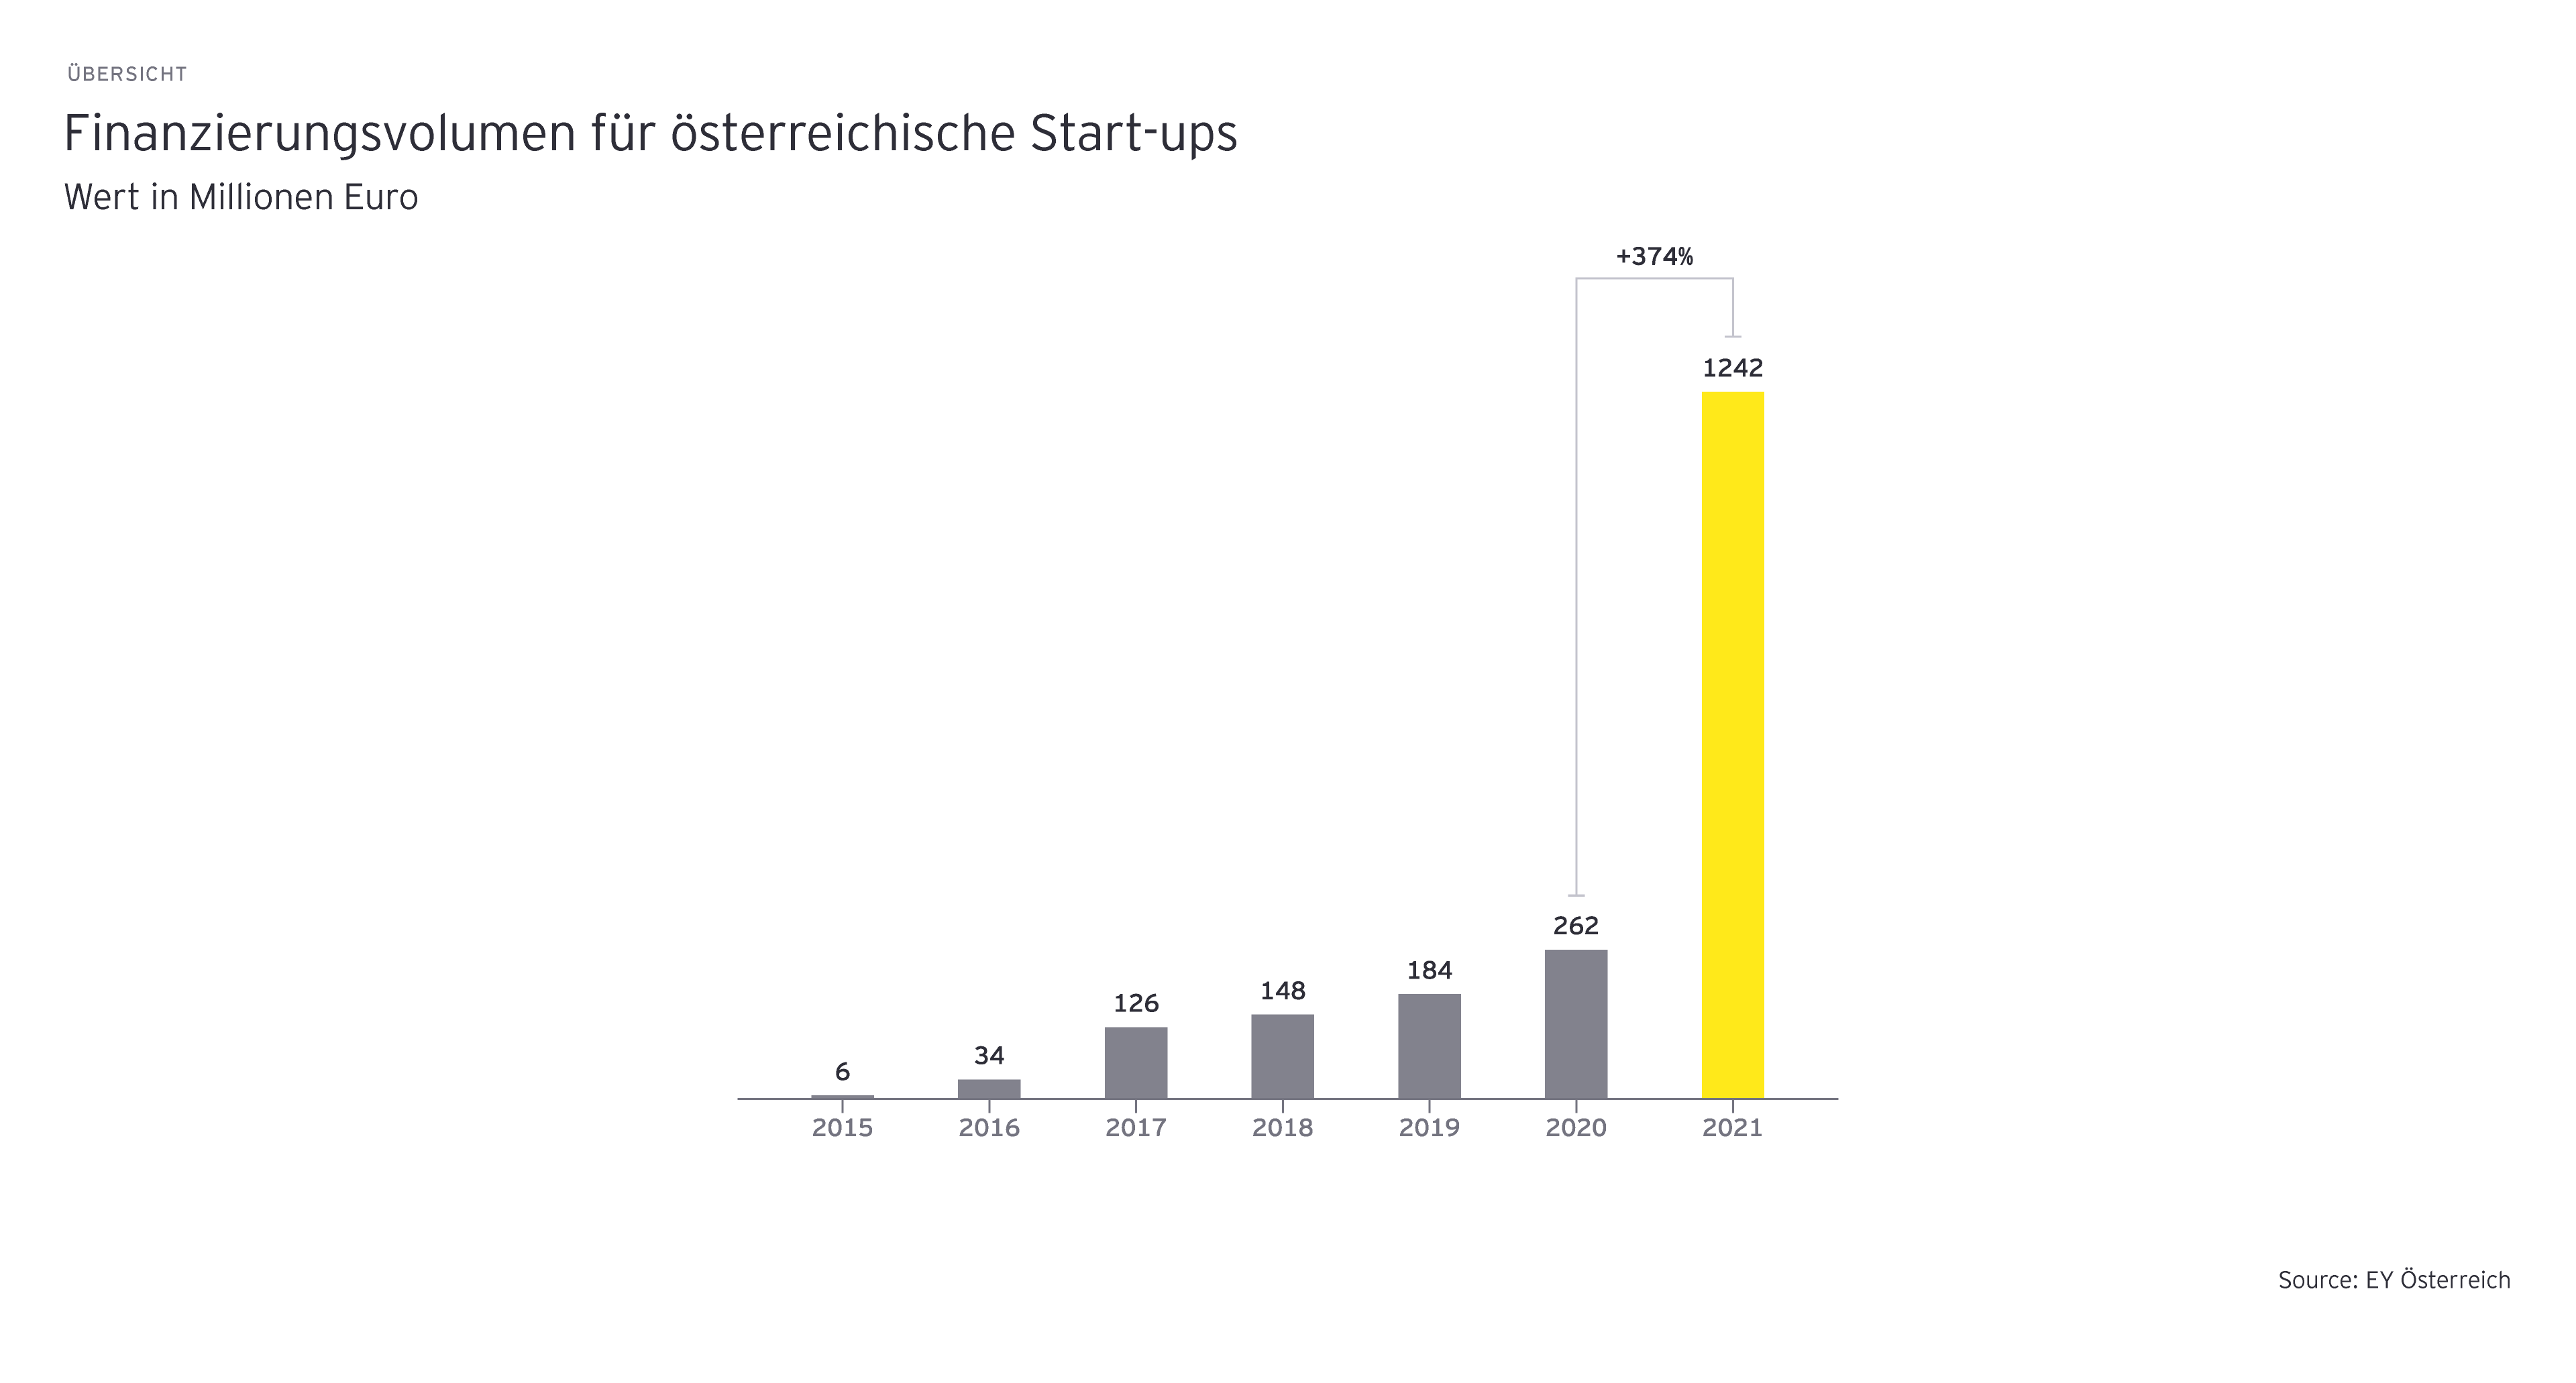 Finanzierungsvolumen für österreichische Start-ups